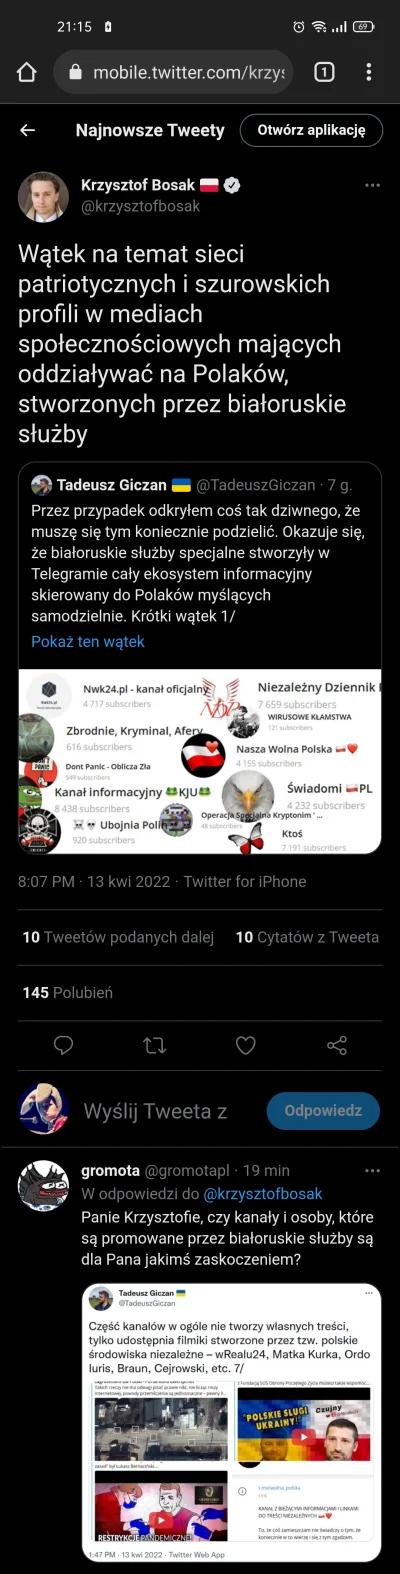 zafrasowany - Krzysztof Bosak podał na Twitterze wątek ze zdemaskowaniem sieci szursk...